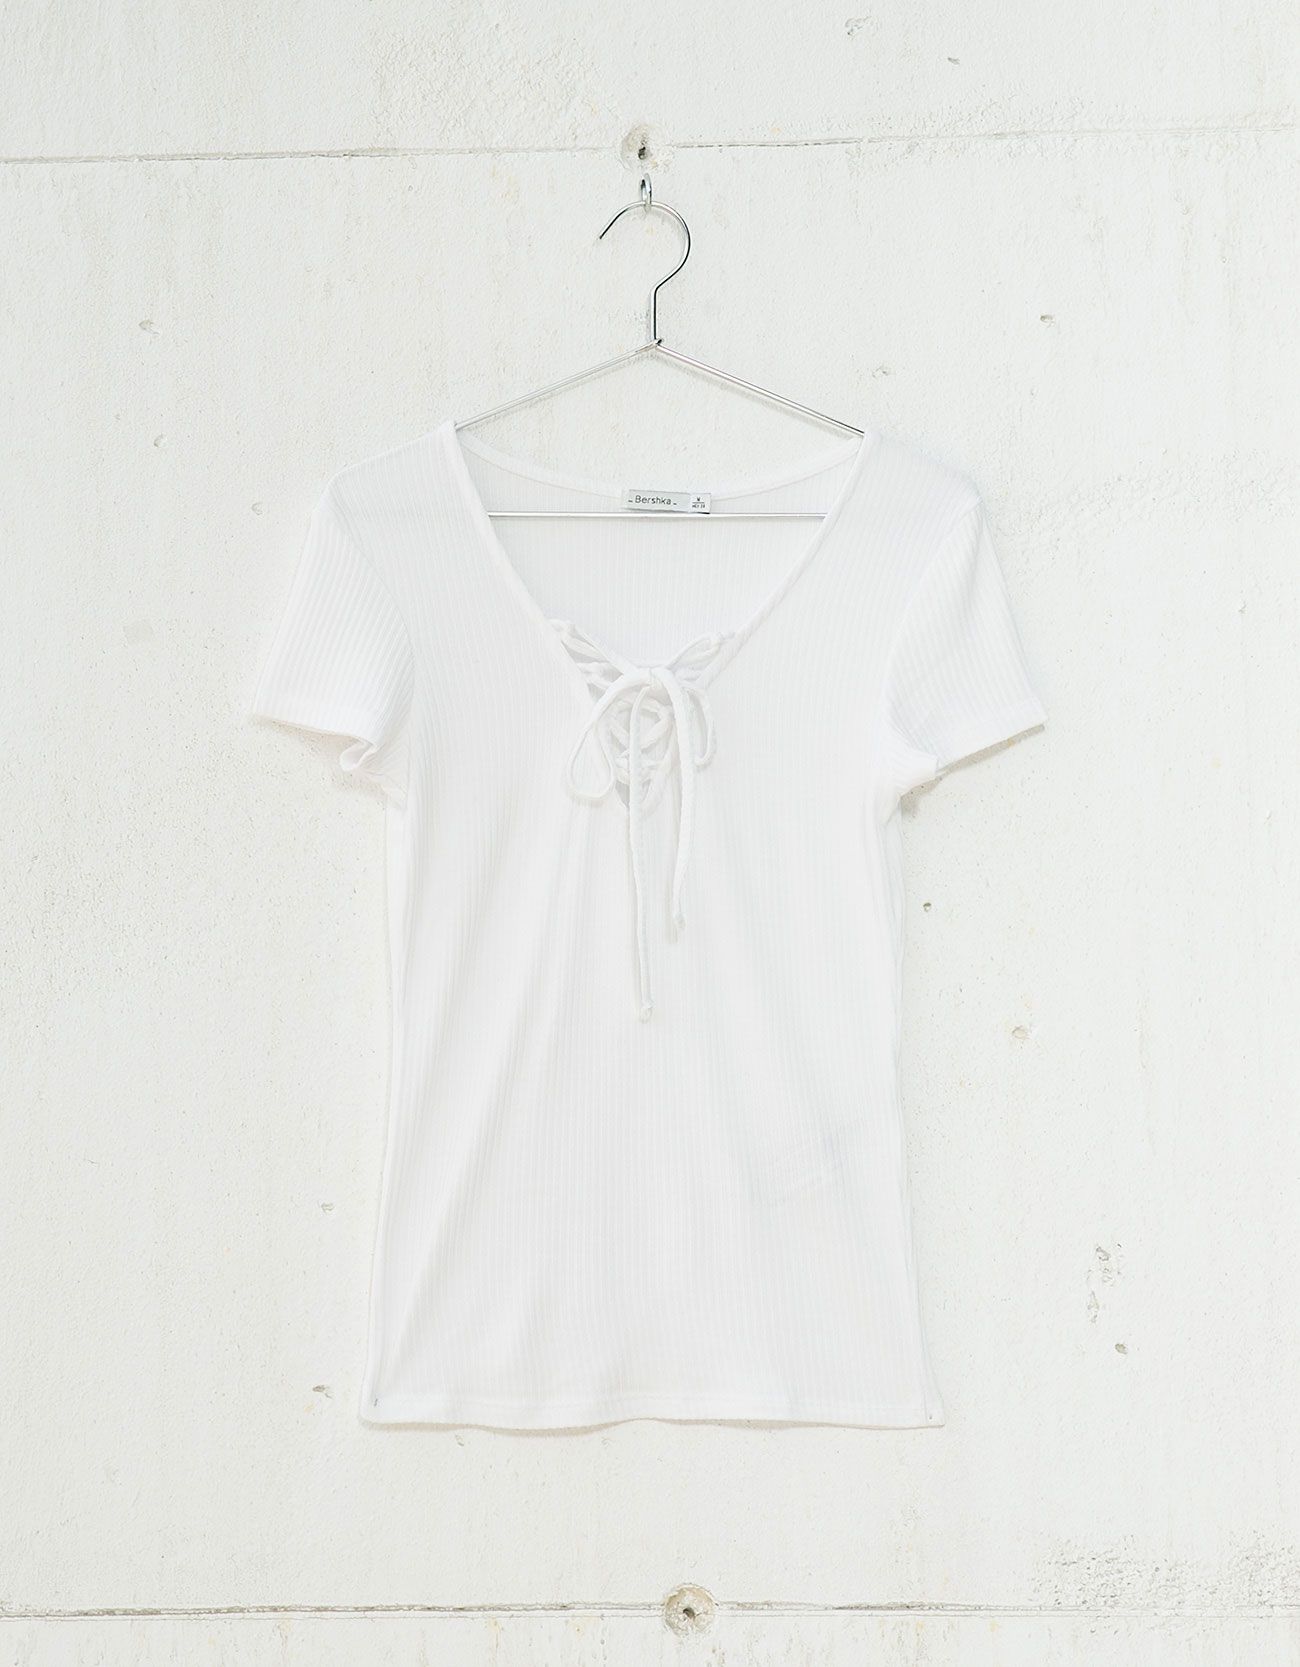 Copia el look Alessandra Ambrosio, camiseta algodón.